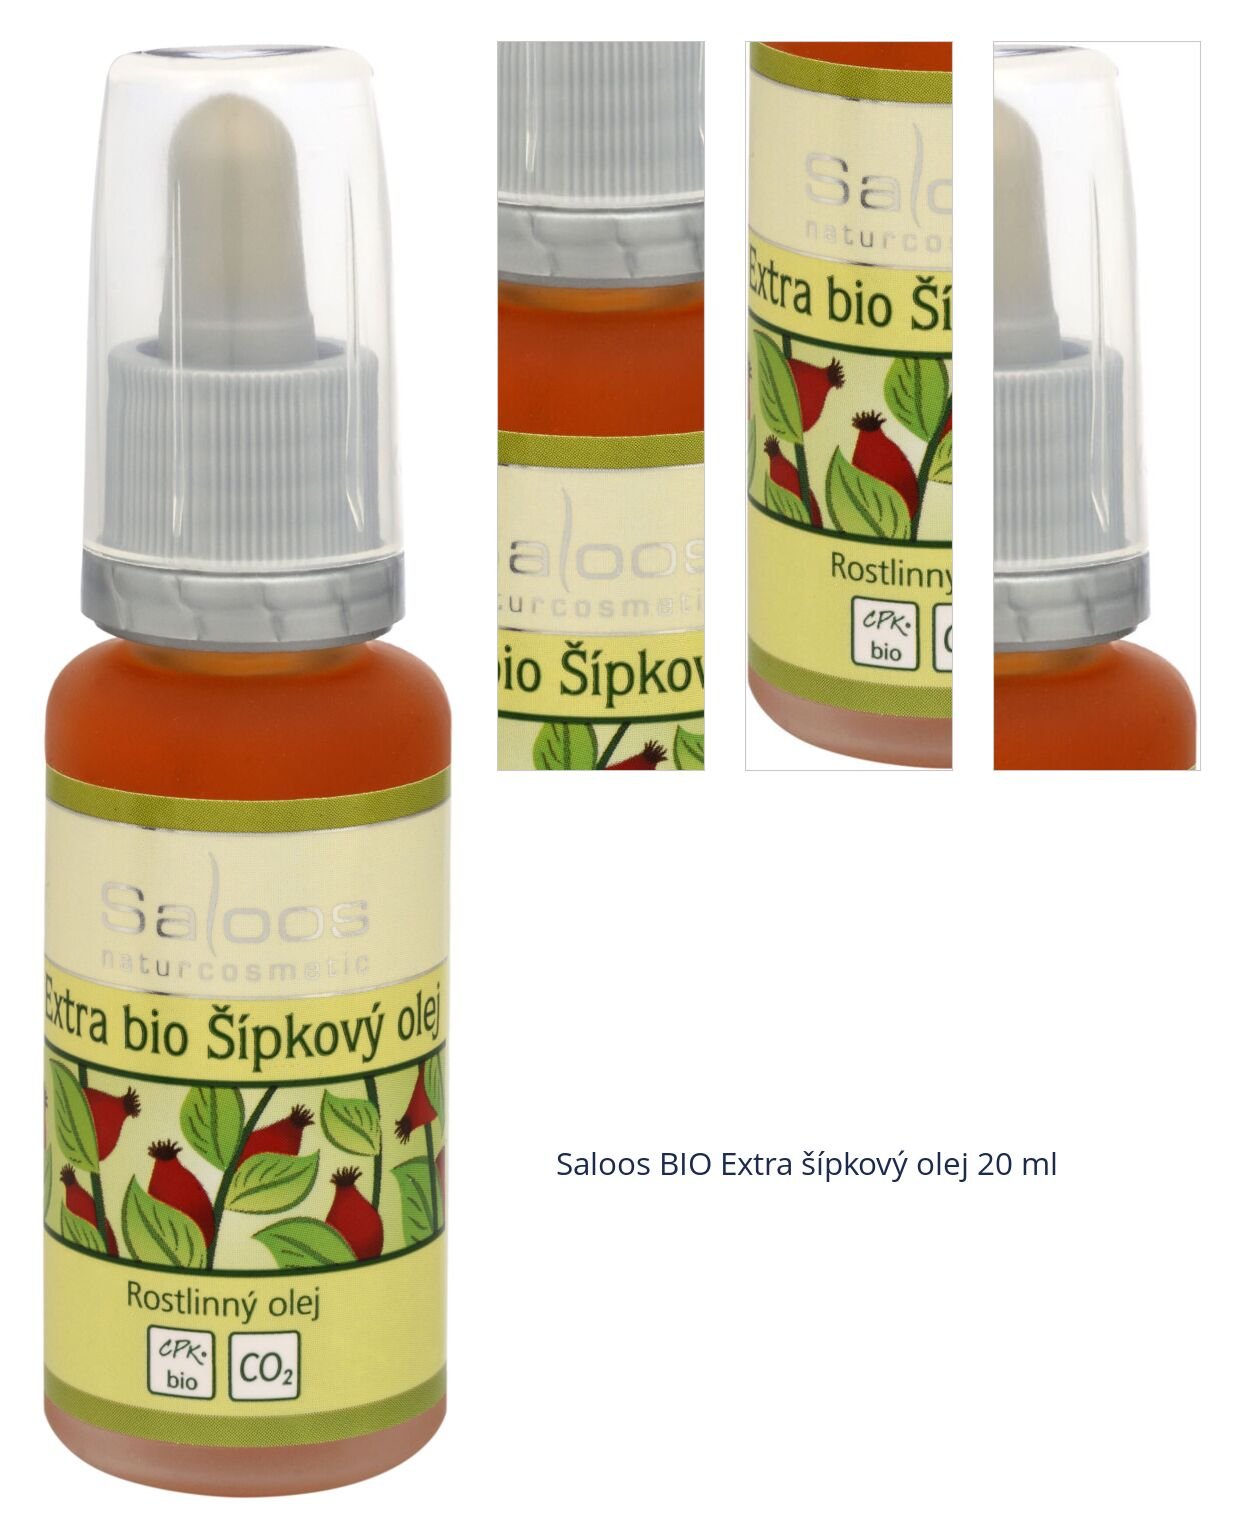 Saloos BIO Extra šípkový olej 20 ml 1